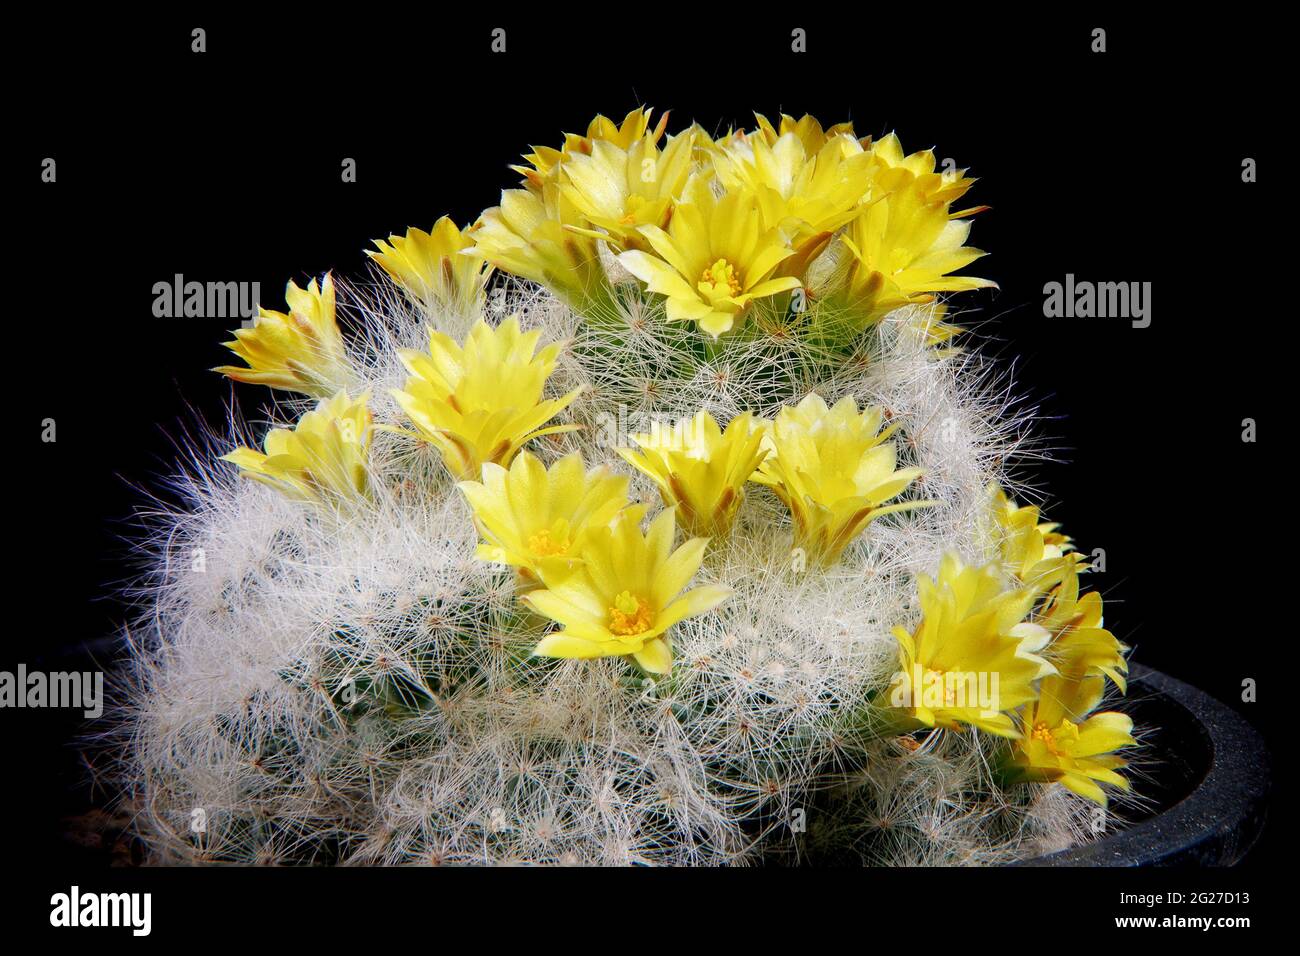 mammillaria cactus yellow flower blooming Stock Photo